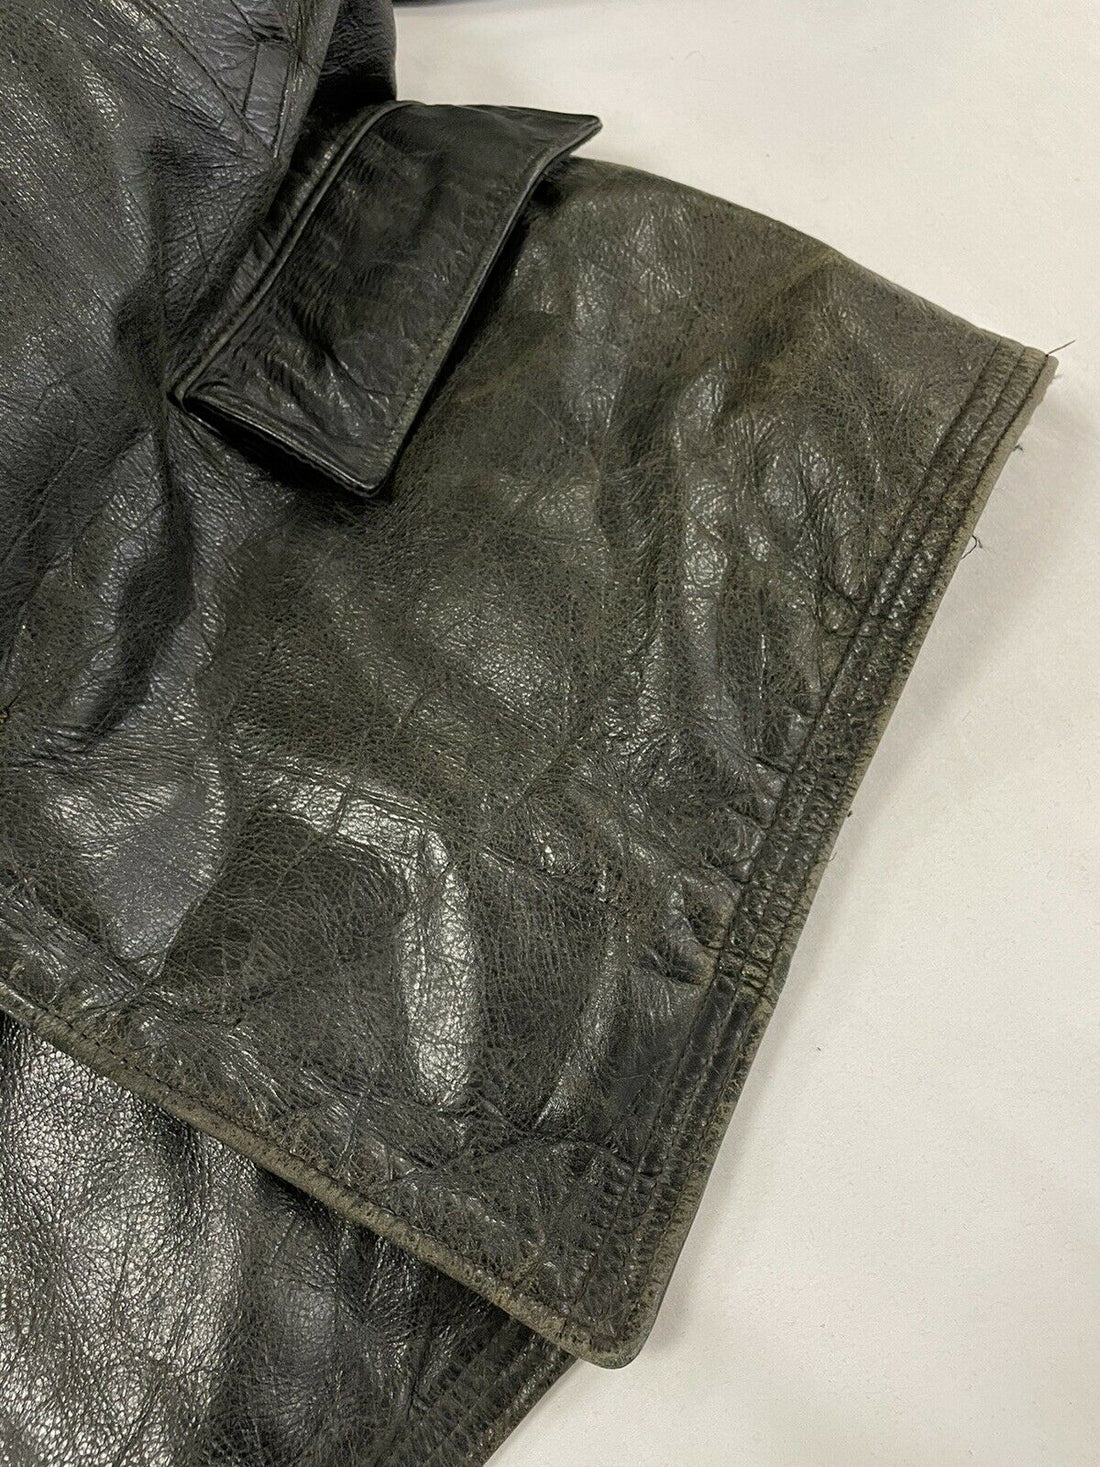 Vintage Barnstormer Leather Coat Jacket Size Large Sherpa Collar Lined